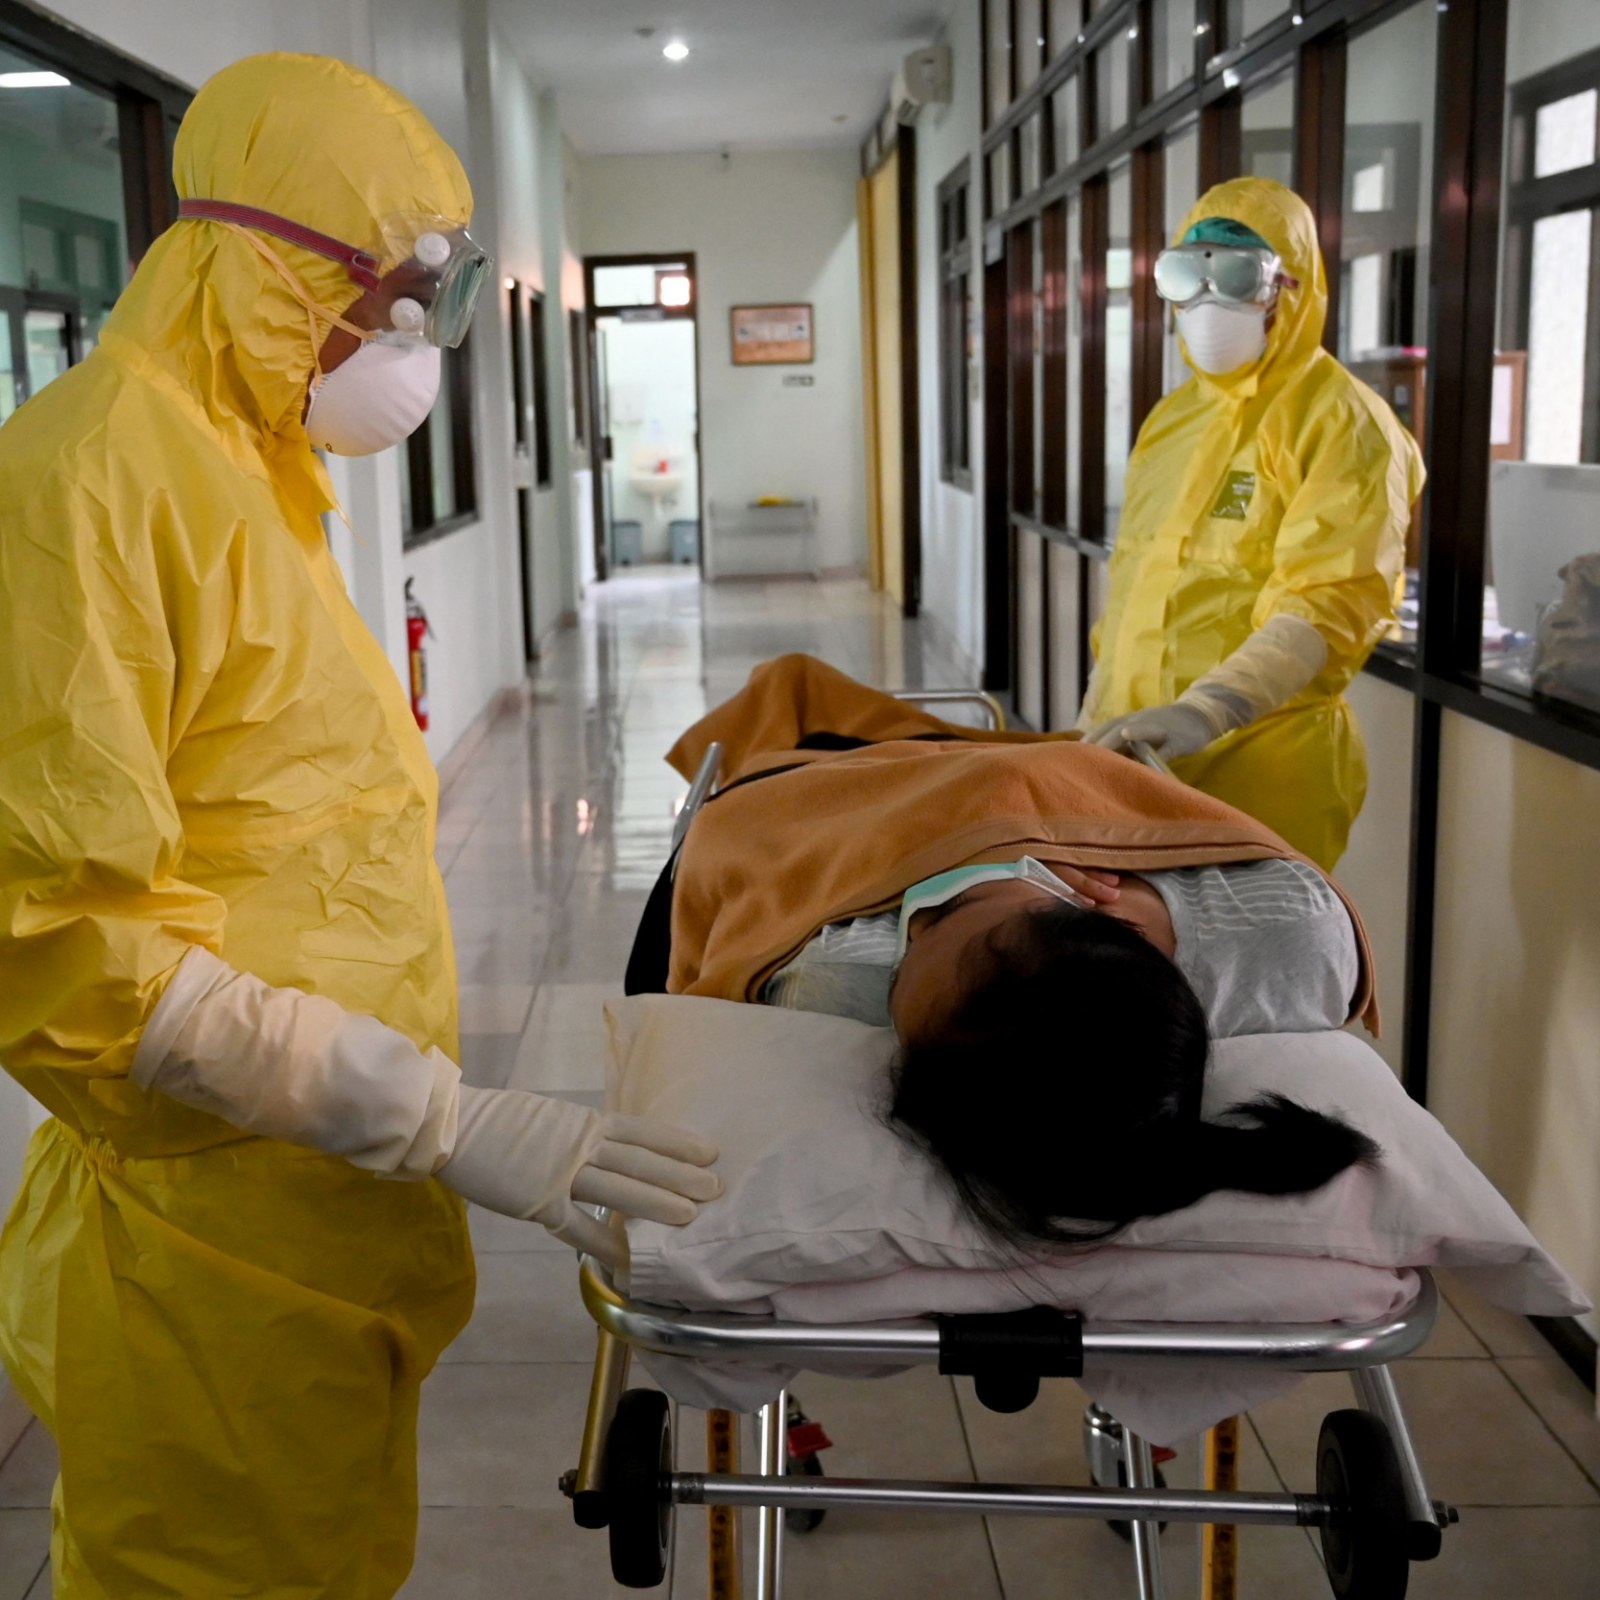 اليابان تسجل أول حالة وفاة بفيروس كورونا المستجد